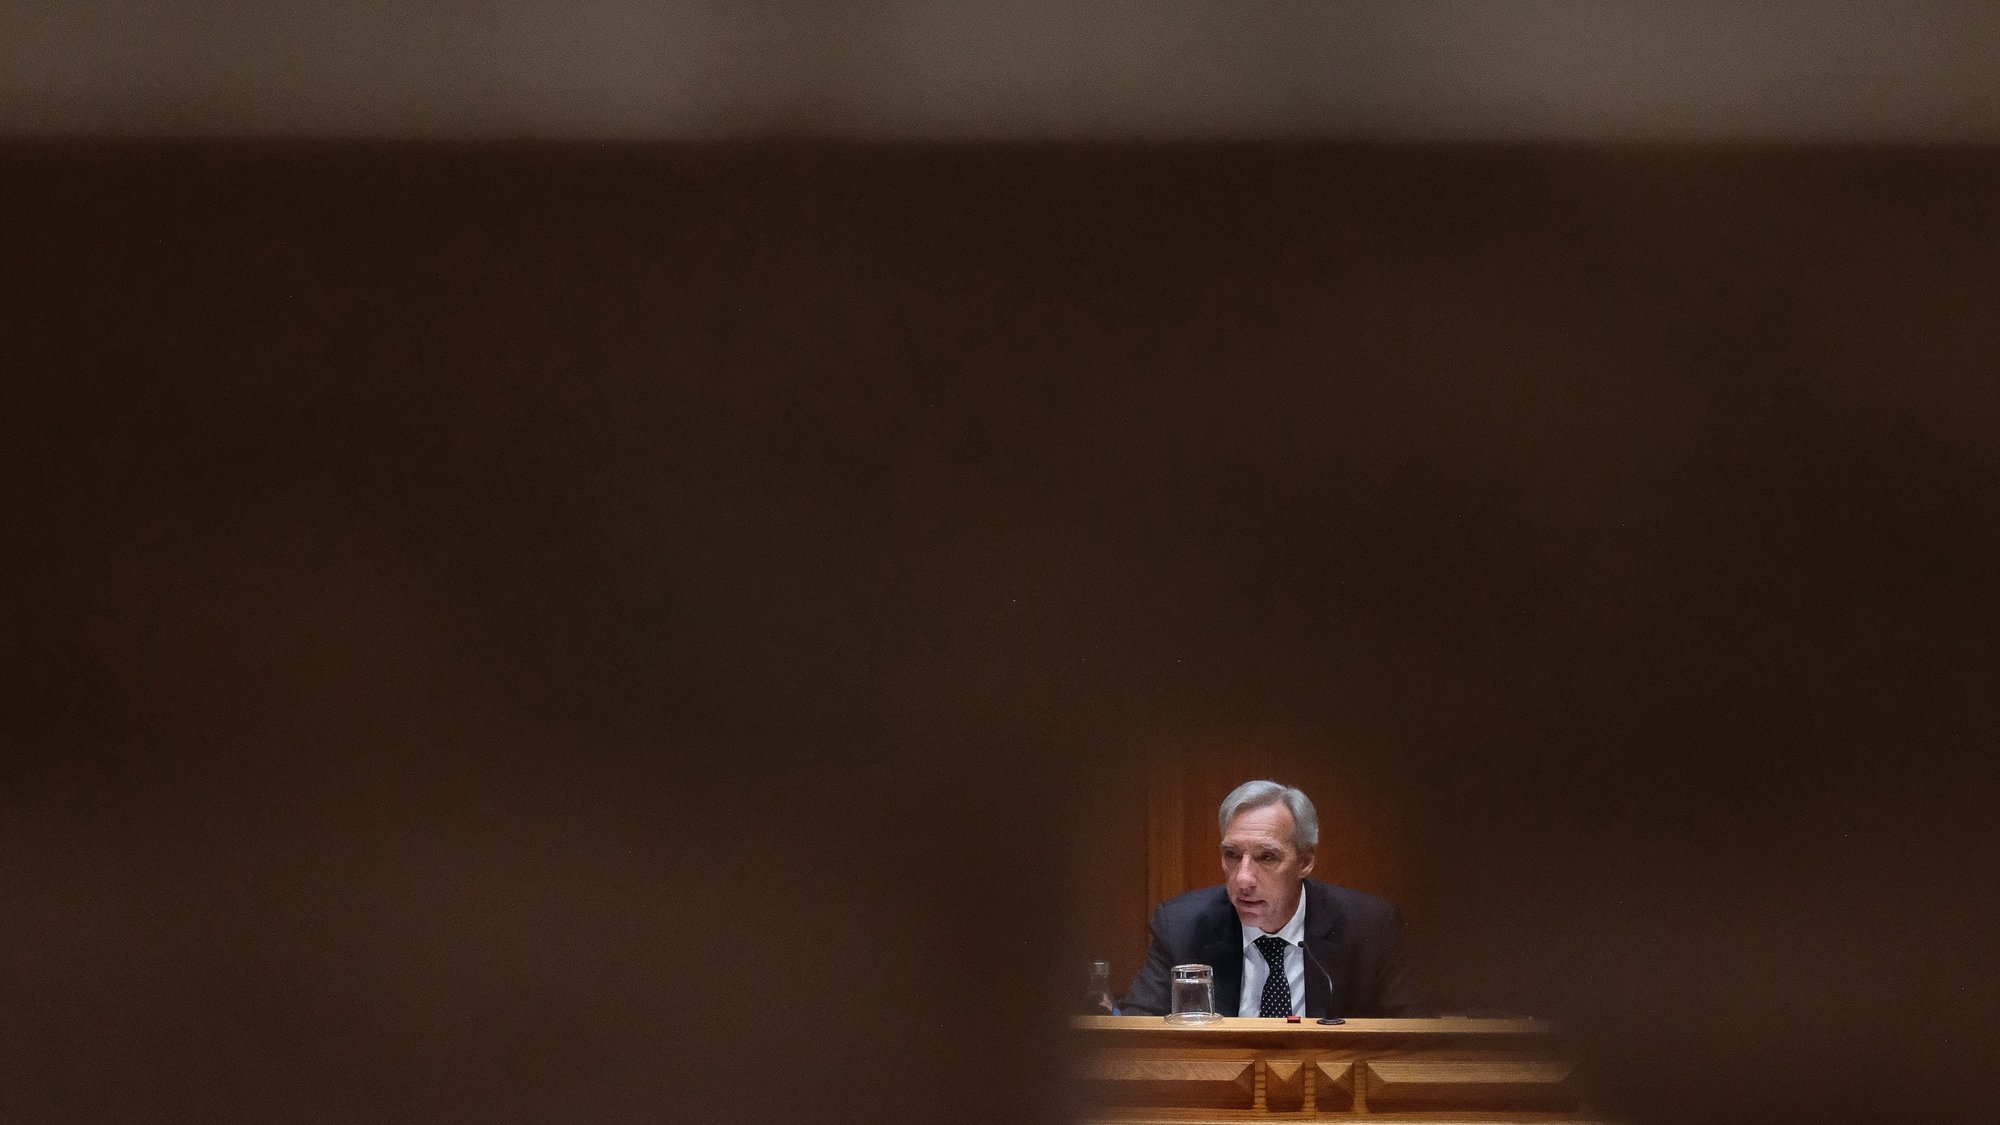 O ministro dos Negócios Estrangeiros, João Gomes Cravinho, durante a sua audição na Comissão de Orçamento e Finanças no âmbito da apreciação, na especialidade, da Proposta de Lei n.º 4/XV/1.ª (GOV) — Aprova o Orçamento do Estado para 2022, na Assembleia da República, em Lisboa, 2 de maio de 2022. MÁRIO CRUZ/LUSA